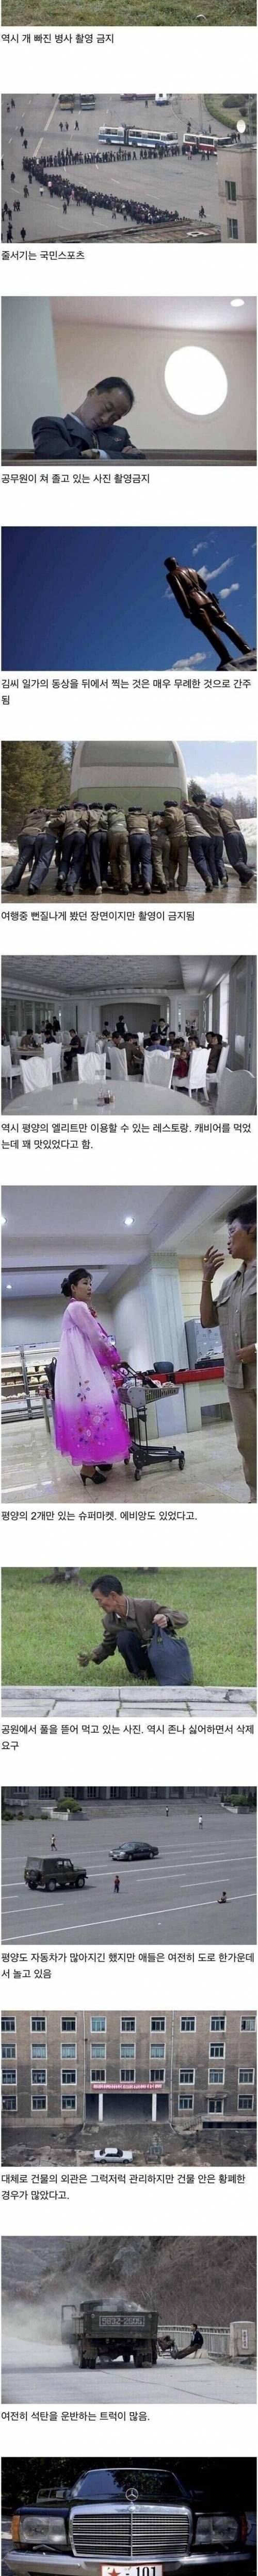 [스압] 사진작가가 몰래 찍었던 북한 사진